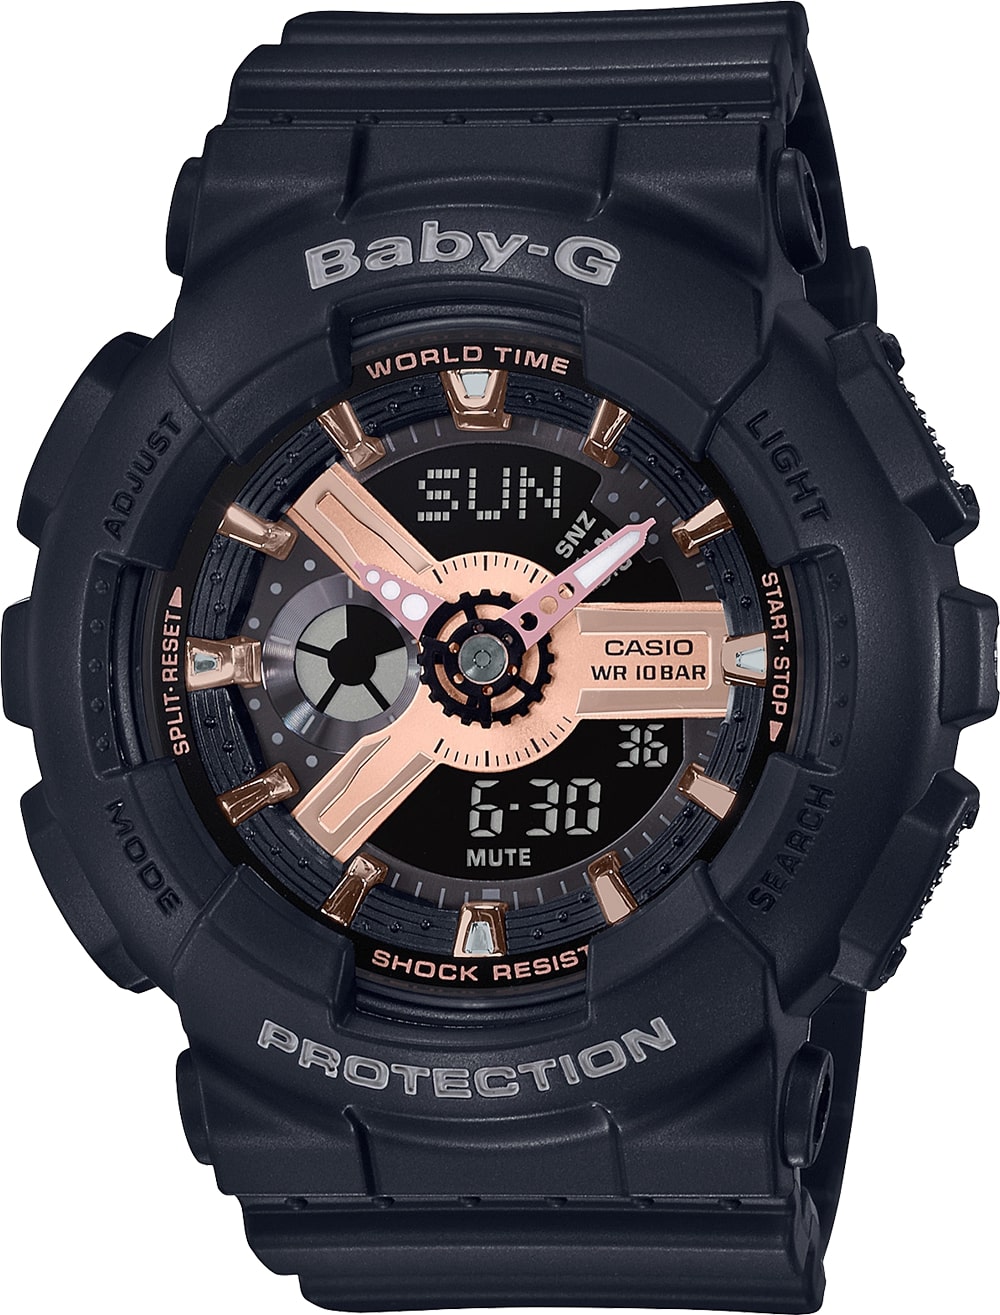 カシオ CASIO 腕時計 BABY-G BA-110RG-1AJF 黒